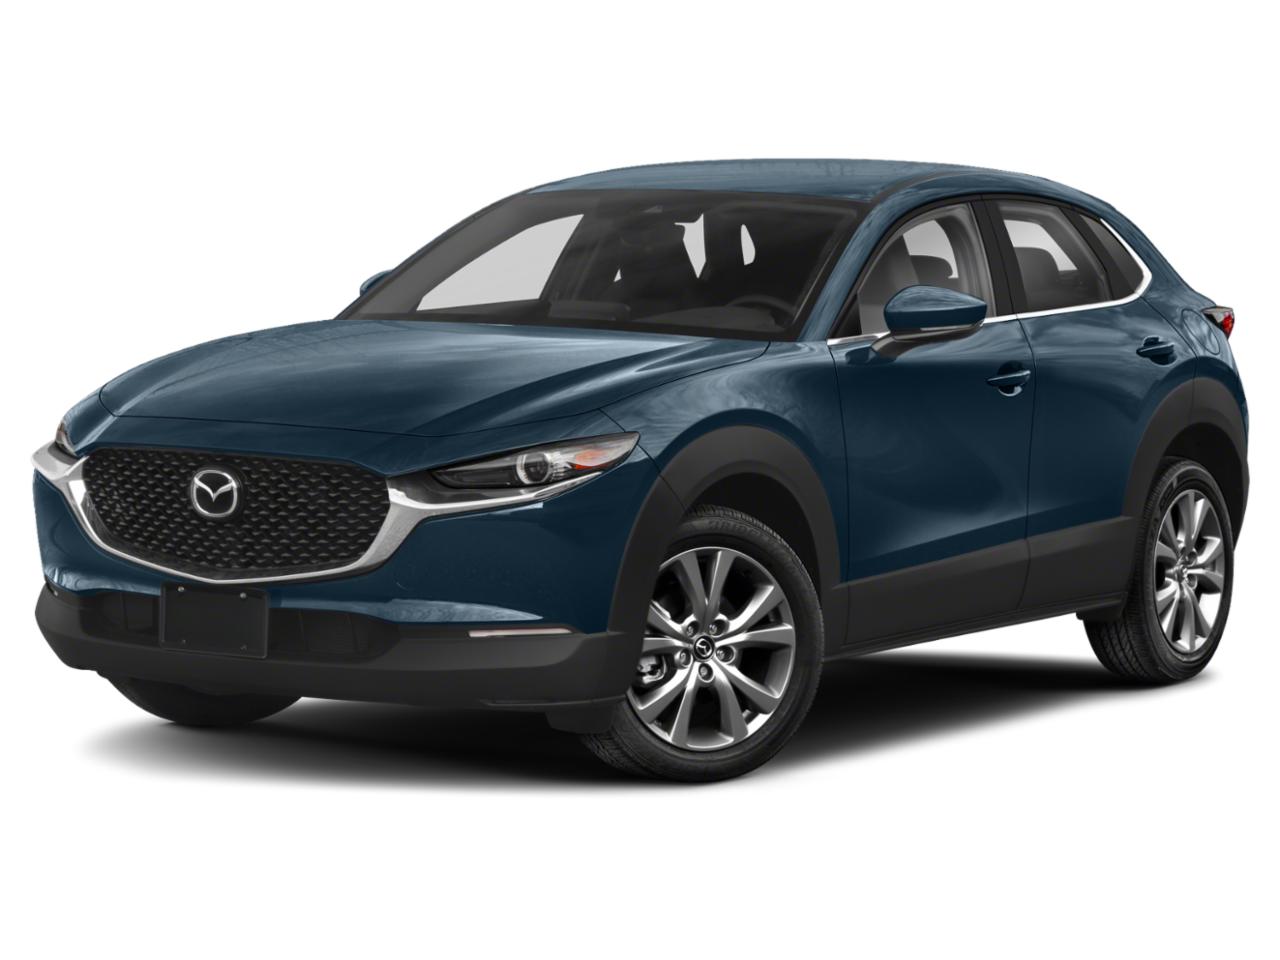 New 2021 Mazda CX-30 for Sale in Green Bay | Bergstrom Mazda Green Bay ...